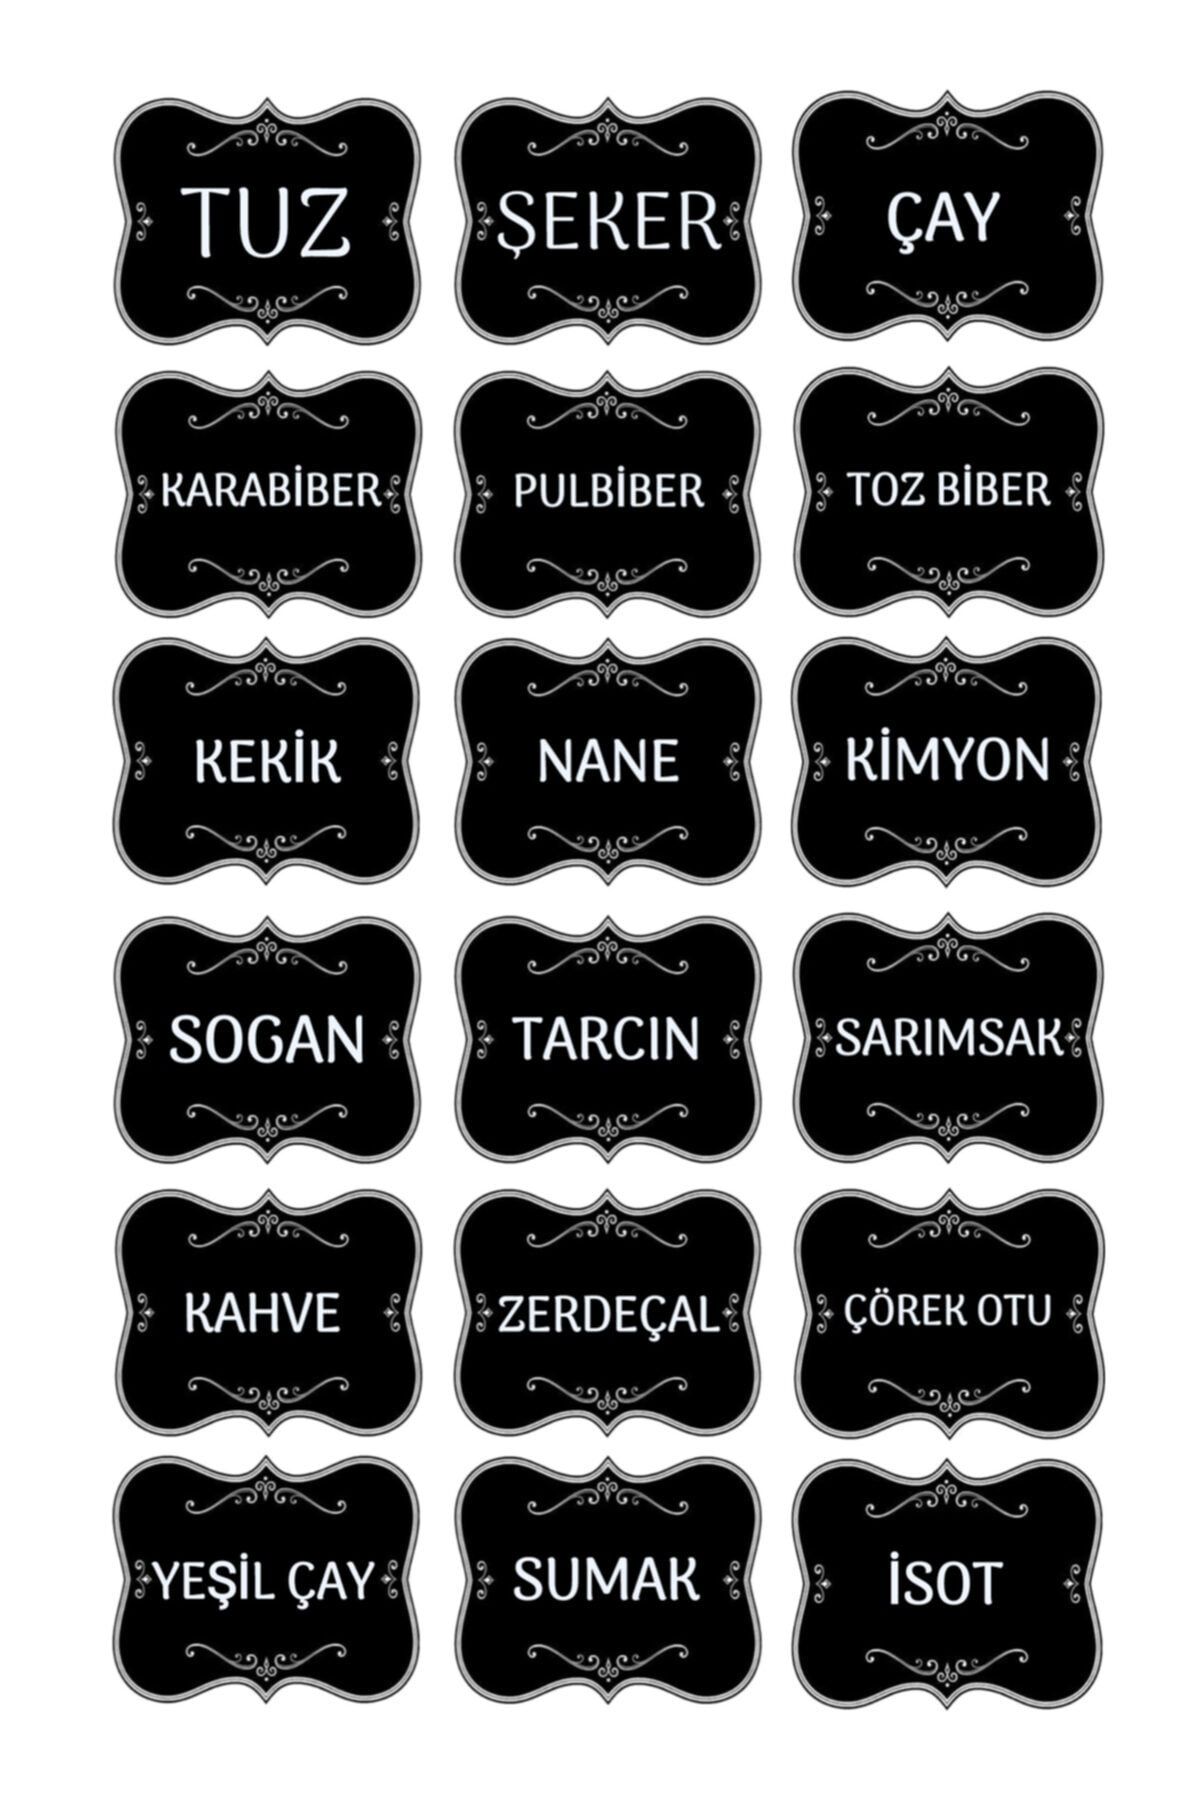 LALEZEN Mutfak Kavanoz Baharatlık Sticker - Baharat Etiket - Hediyeli Gönderim-( 18 Çeşit ) -model002